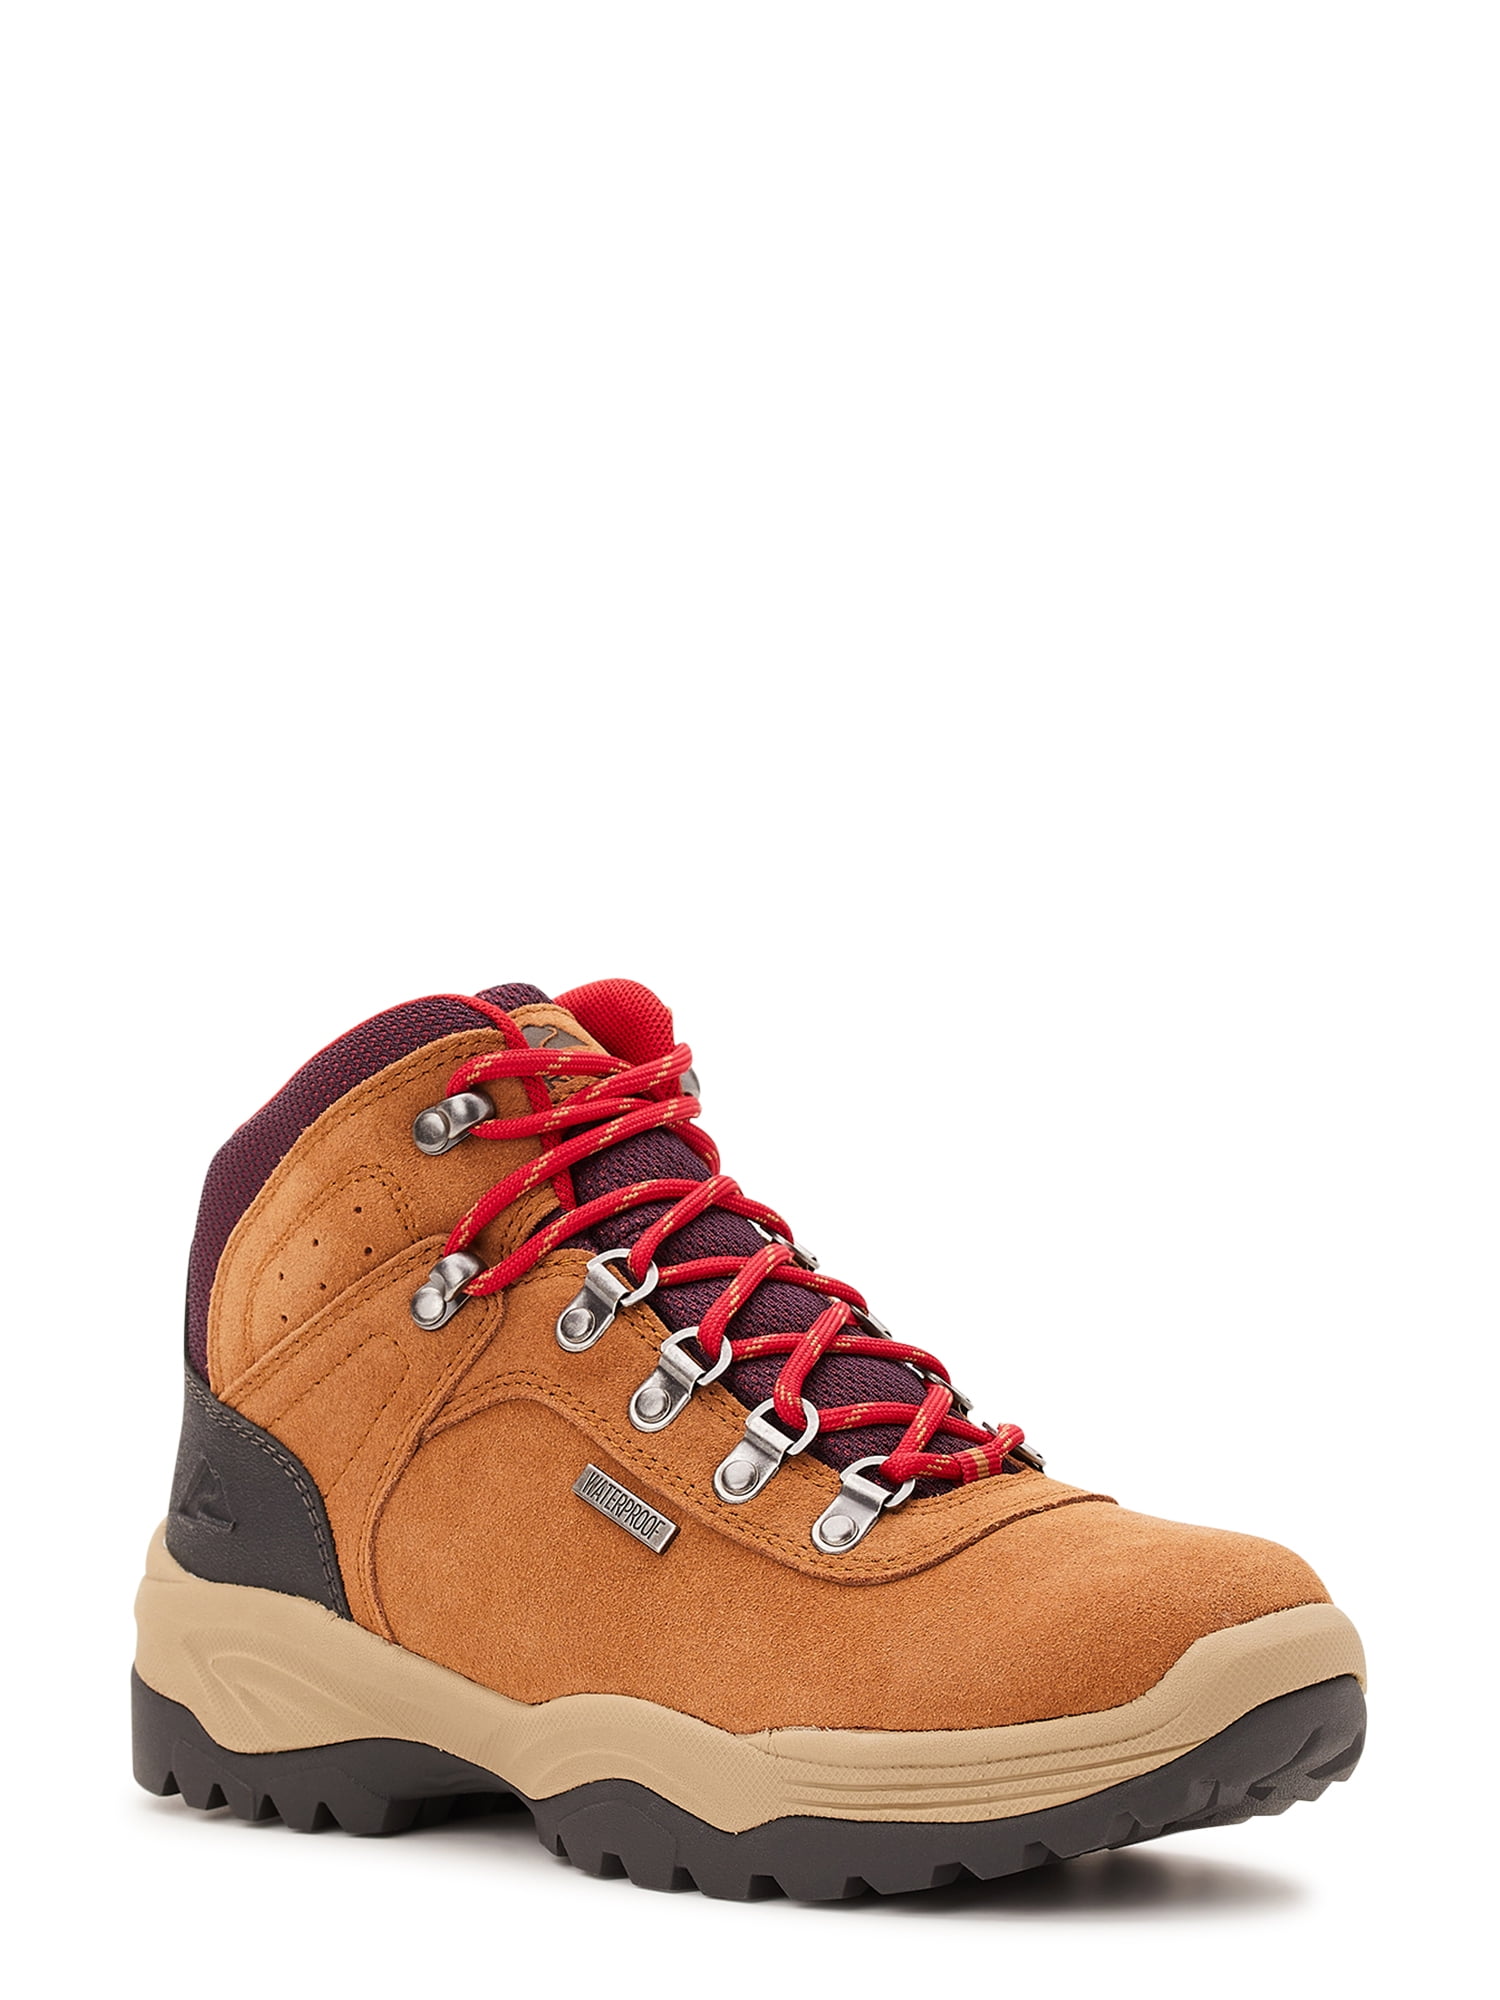 Ozark Trail Women's Waterproof Stoneclad Hiker Boots,size 6-11 ...